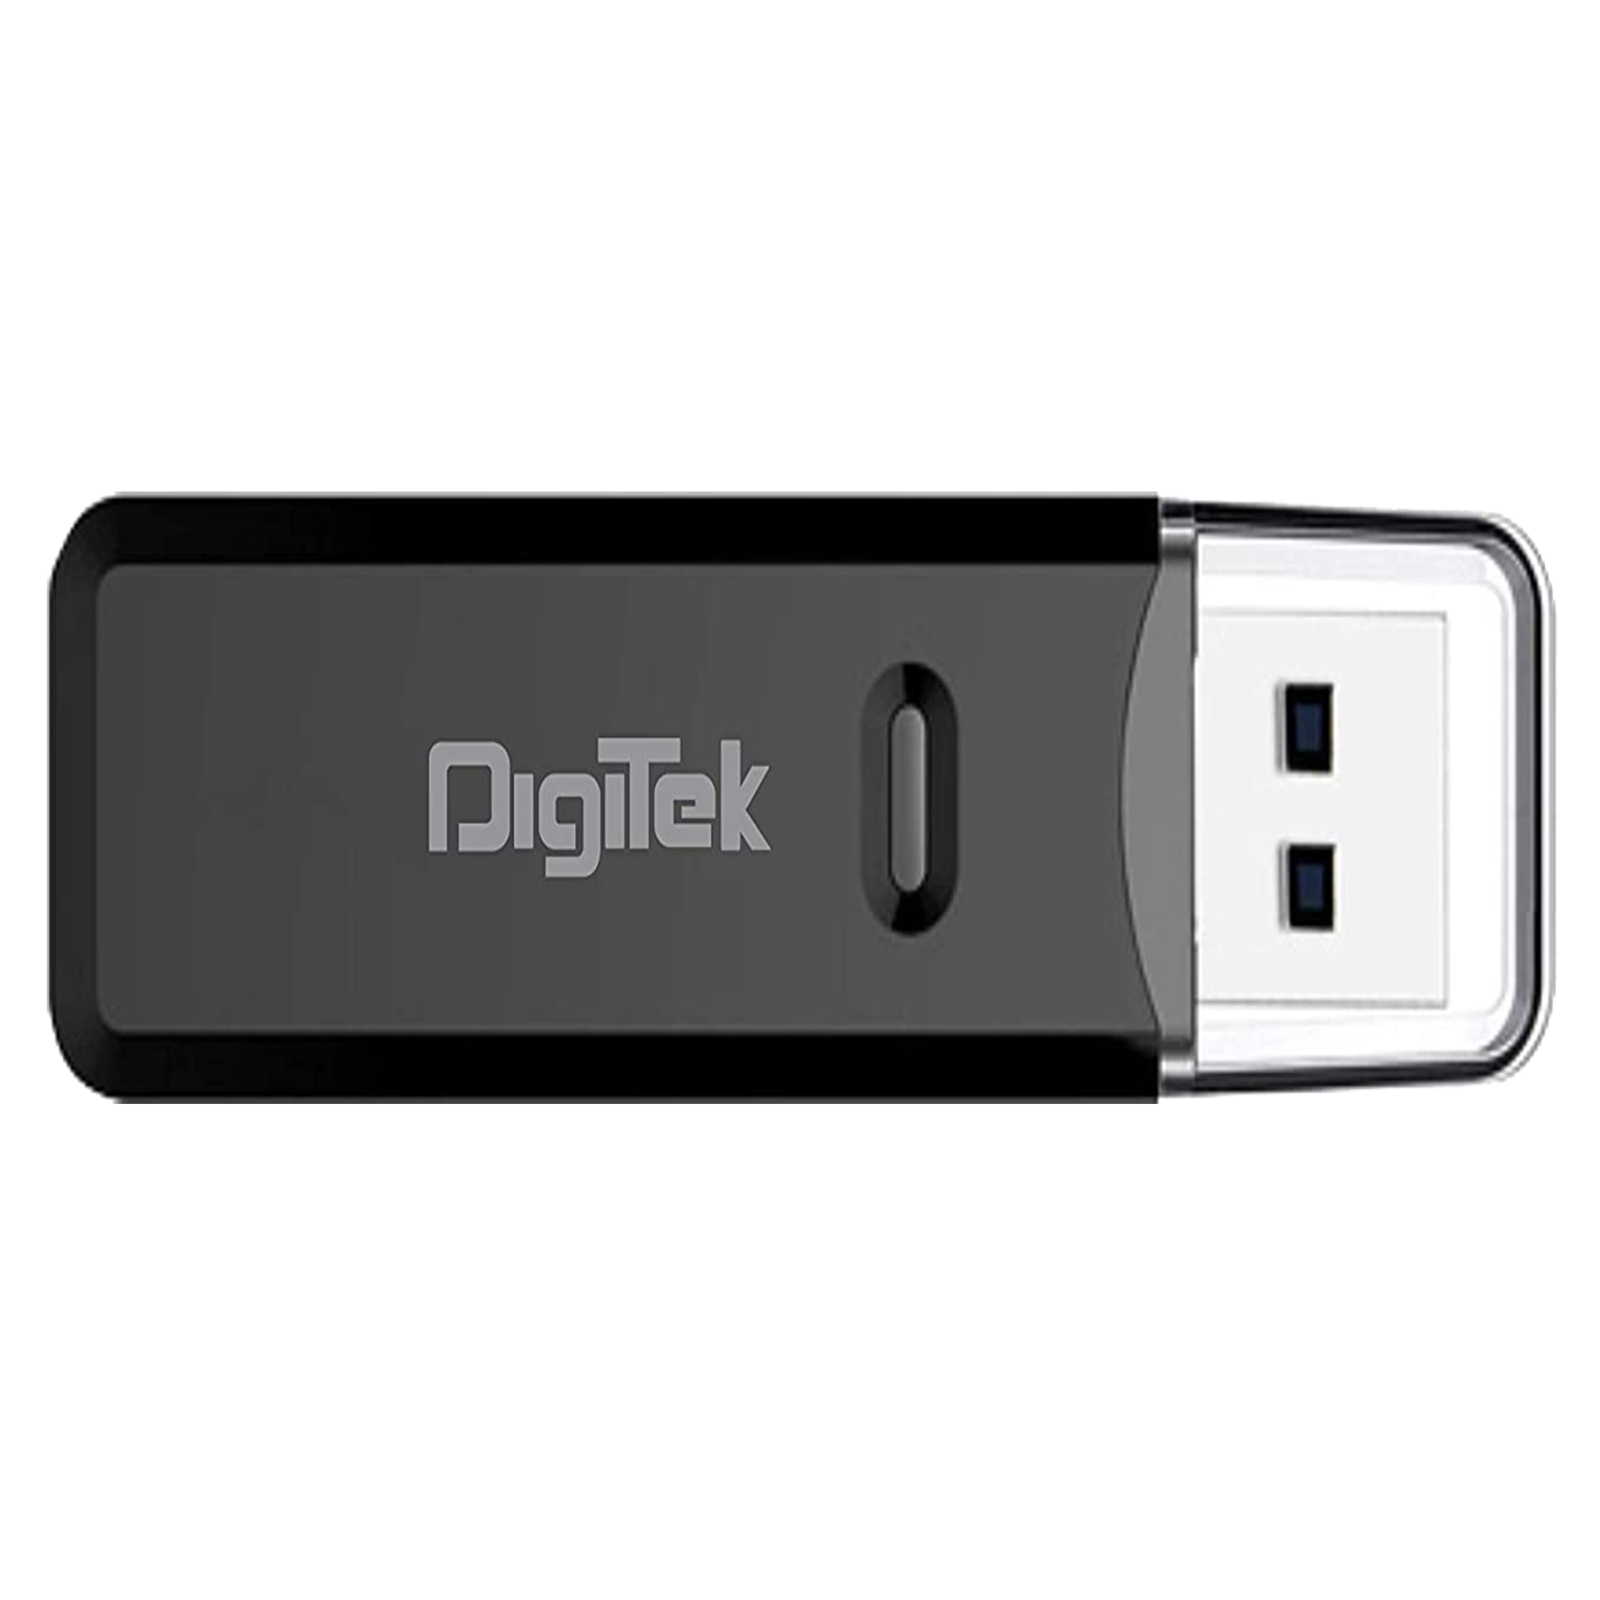 DigiTek DCR 006 USB 3.0 Card Reader (Transfer Speed Up To 5Gbps, B00BM2FK0K, Black)